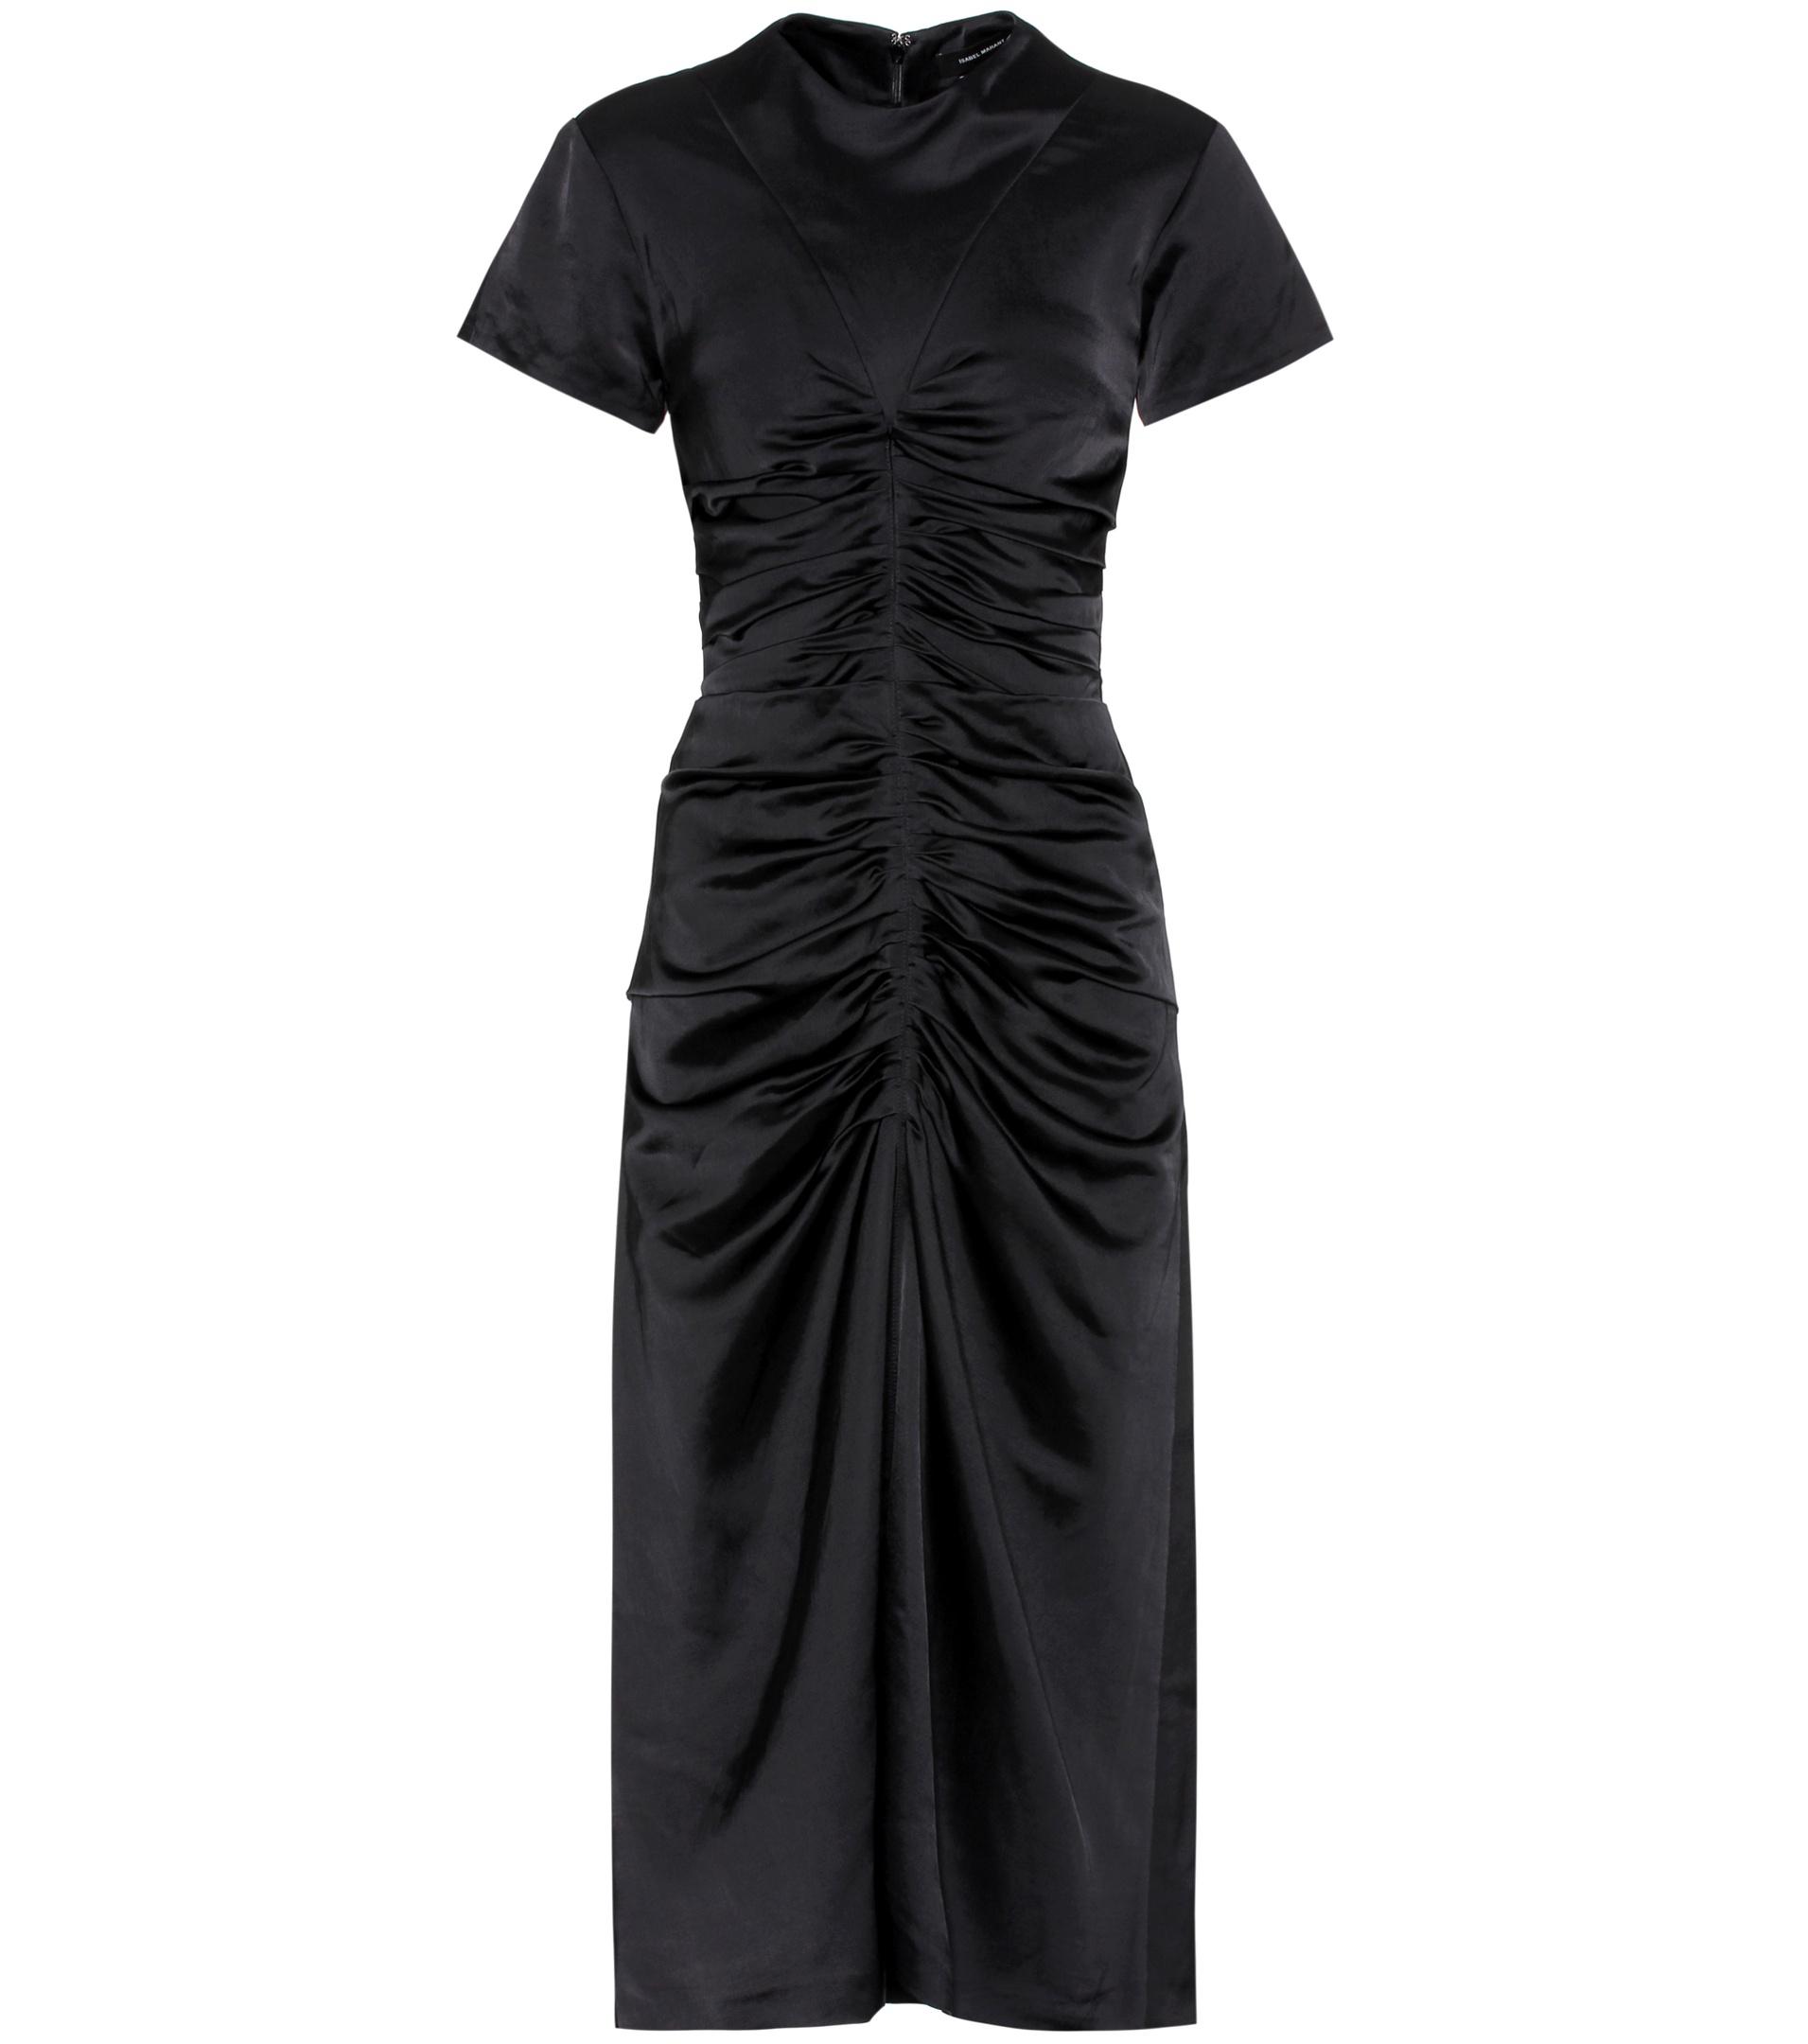 Isabel Marant Else Satin Dress in Black - Lyst